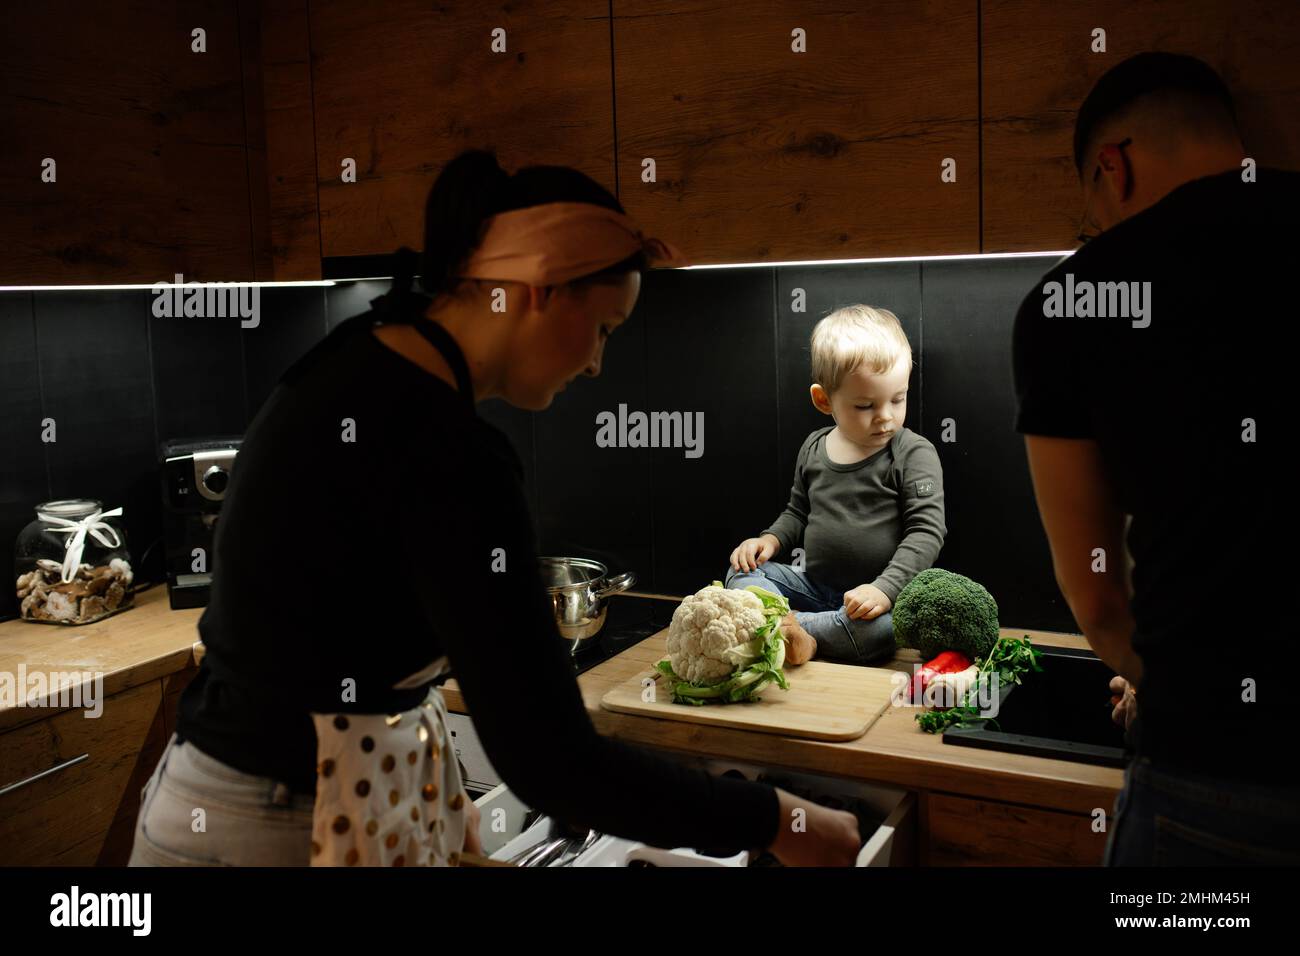 Eltern mit kleinen Kindern kochen in der Küche mit dunklem Licht zu Abend. Bereiten Sie frischen Blumenkohlkopf für das Schneiden an Bord vor. Stockfoto